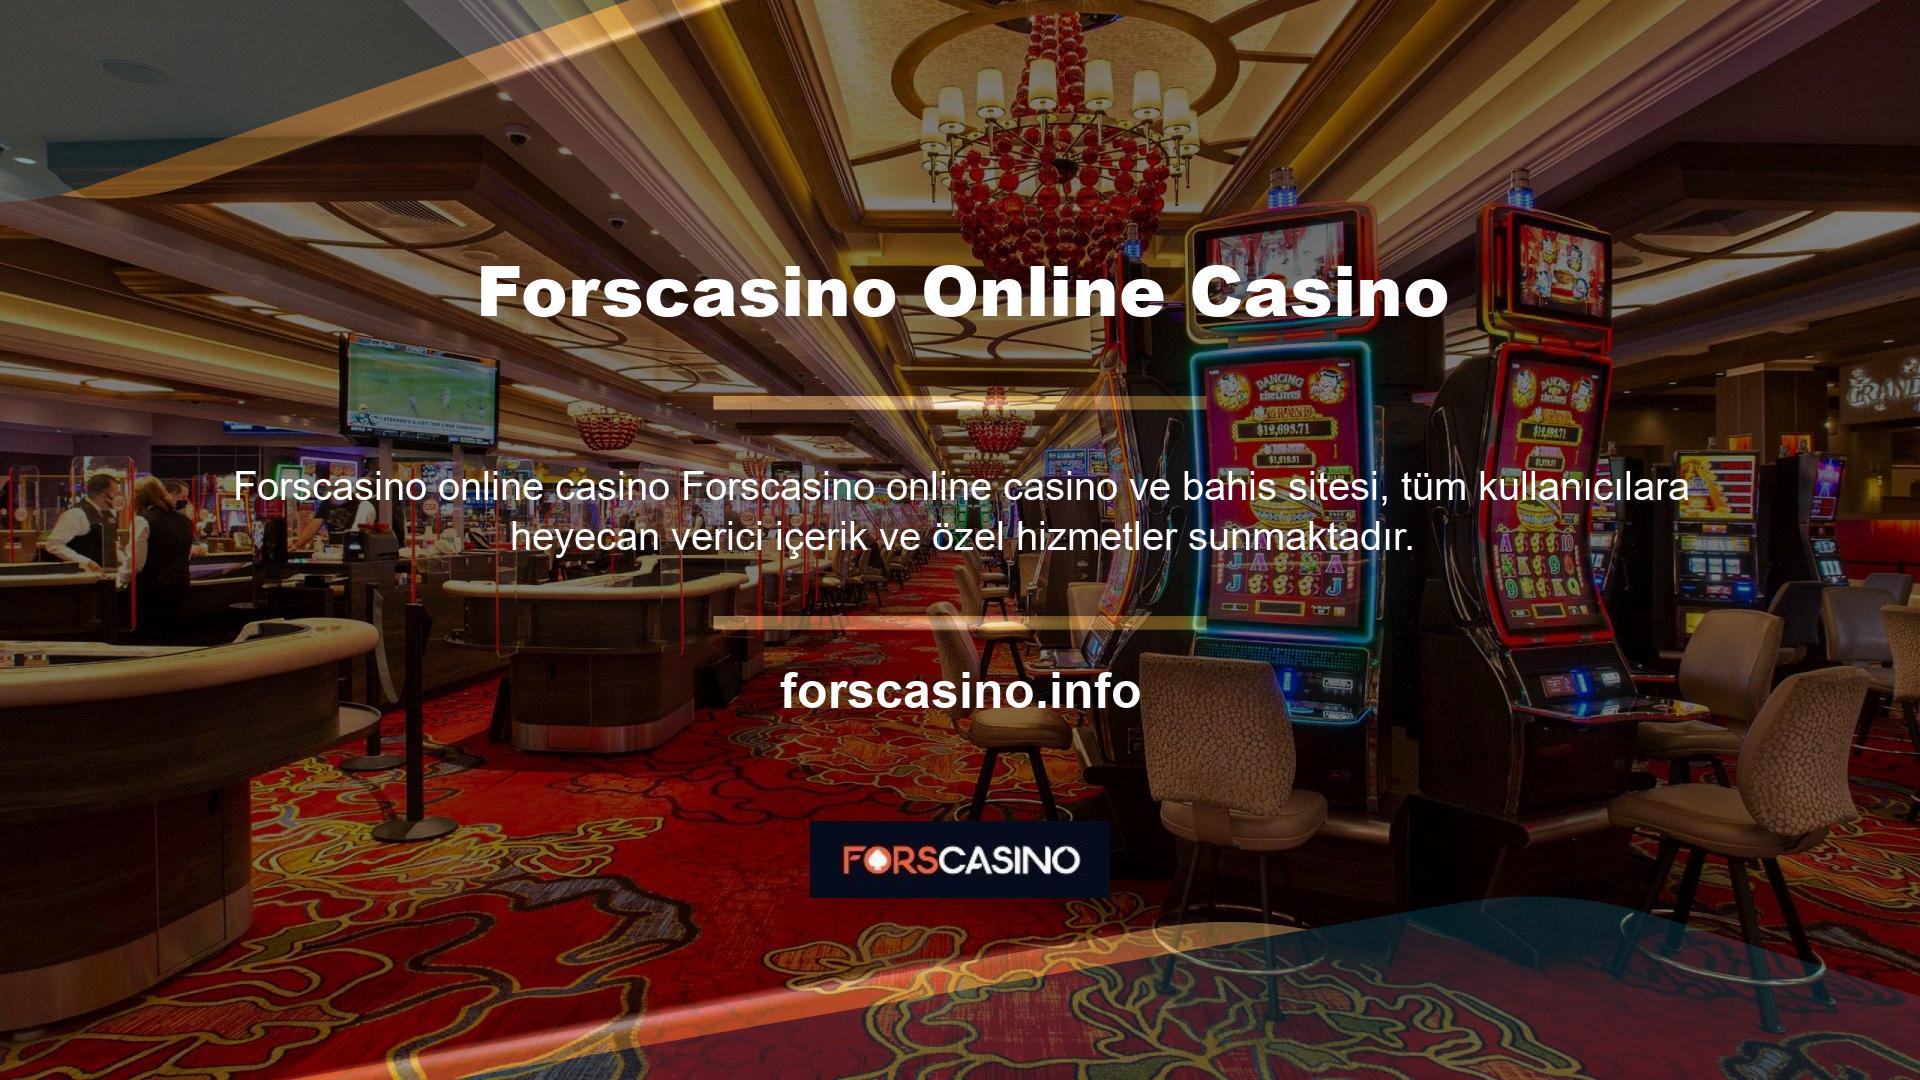 Forscasino, tüm kullanıcılar için spor bahisleri, canlı bahis, casino, canlı casino, sanal oyunlar, tavla, tombala ve daha fazlasını sunar